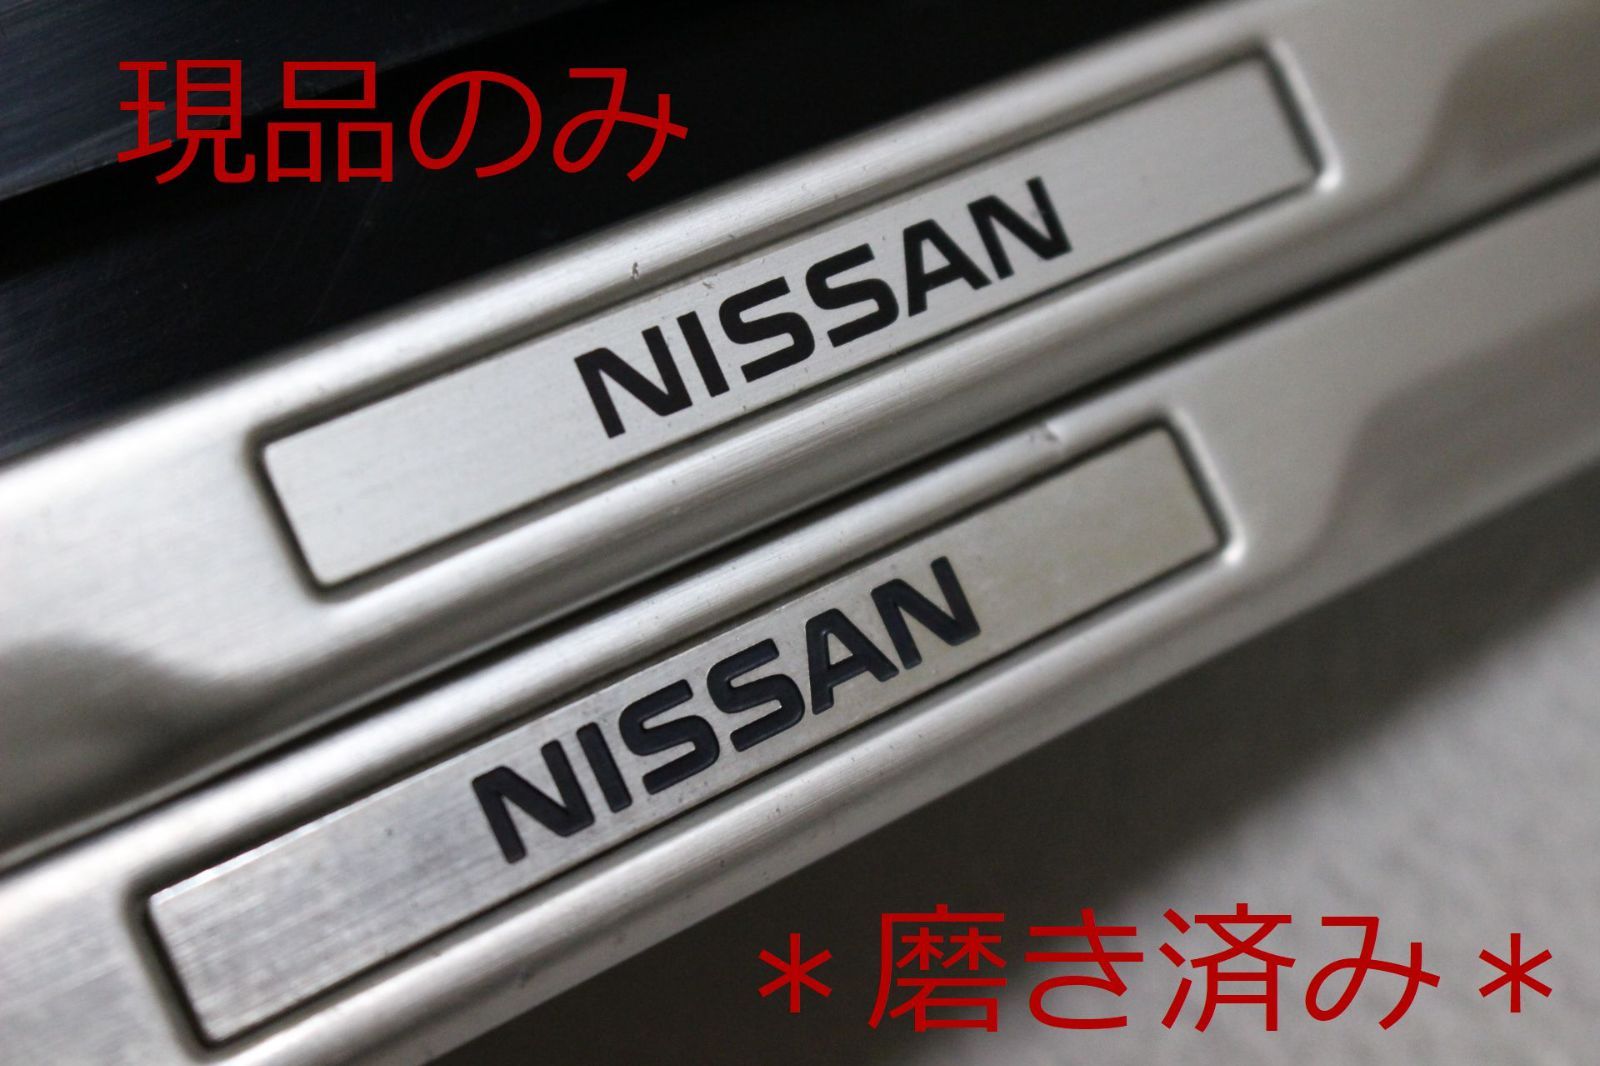 希少NISSAN日産純正OPナンバーフレームアルミコンビ製2枚現品のみ - BooBooパーツ - メルカリ